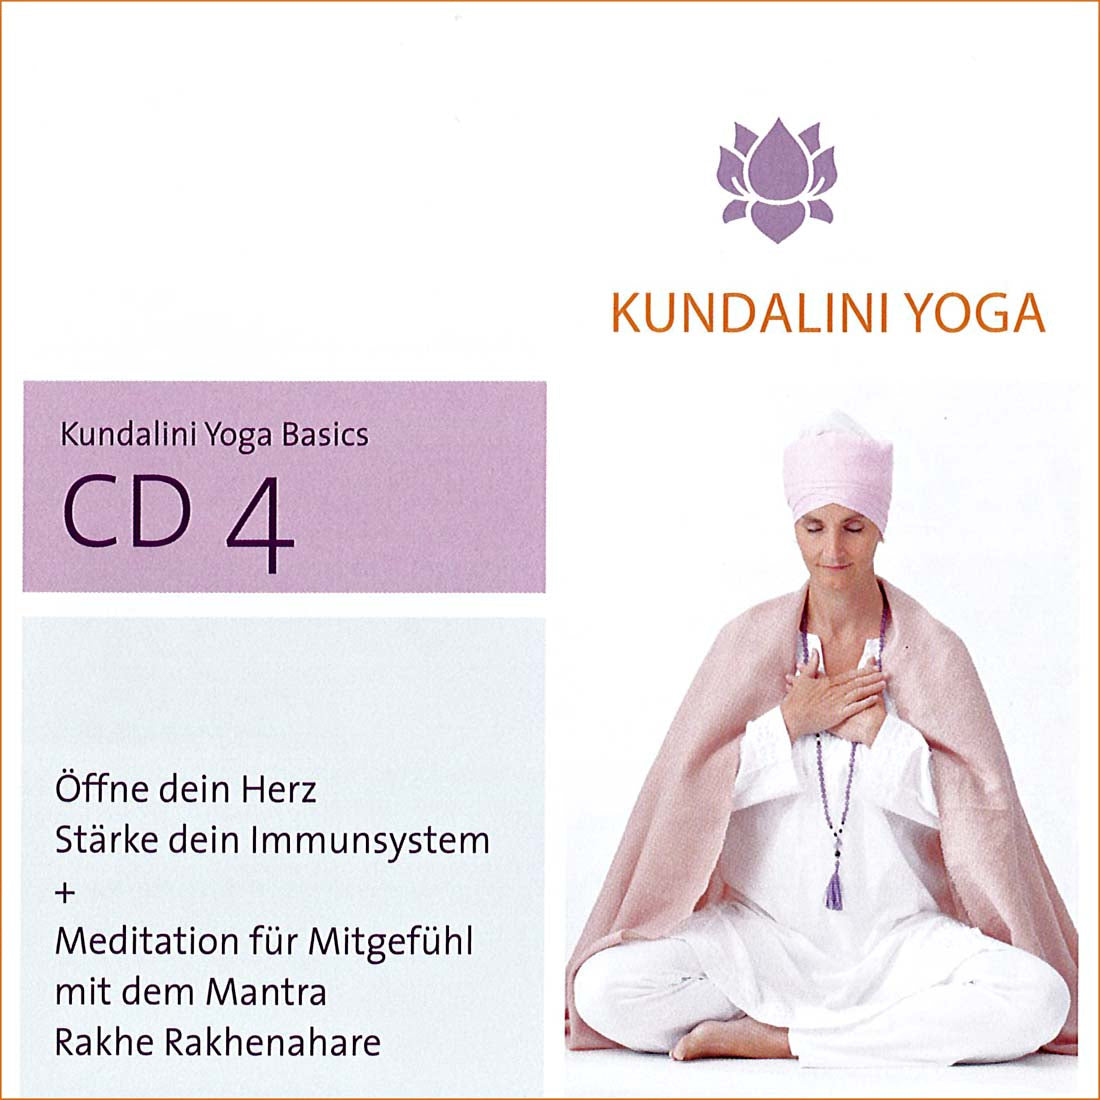 Kundalini Yoga Basics CD 4 - Gurmeet Kaur complete